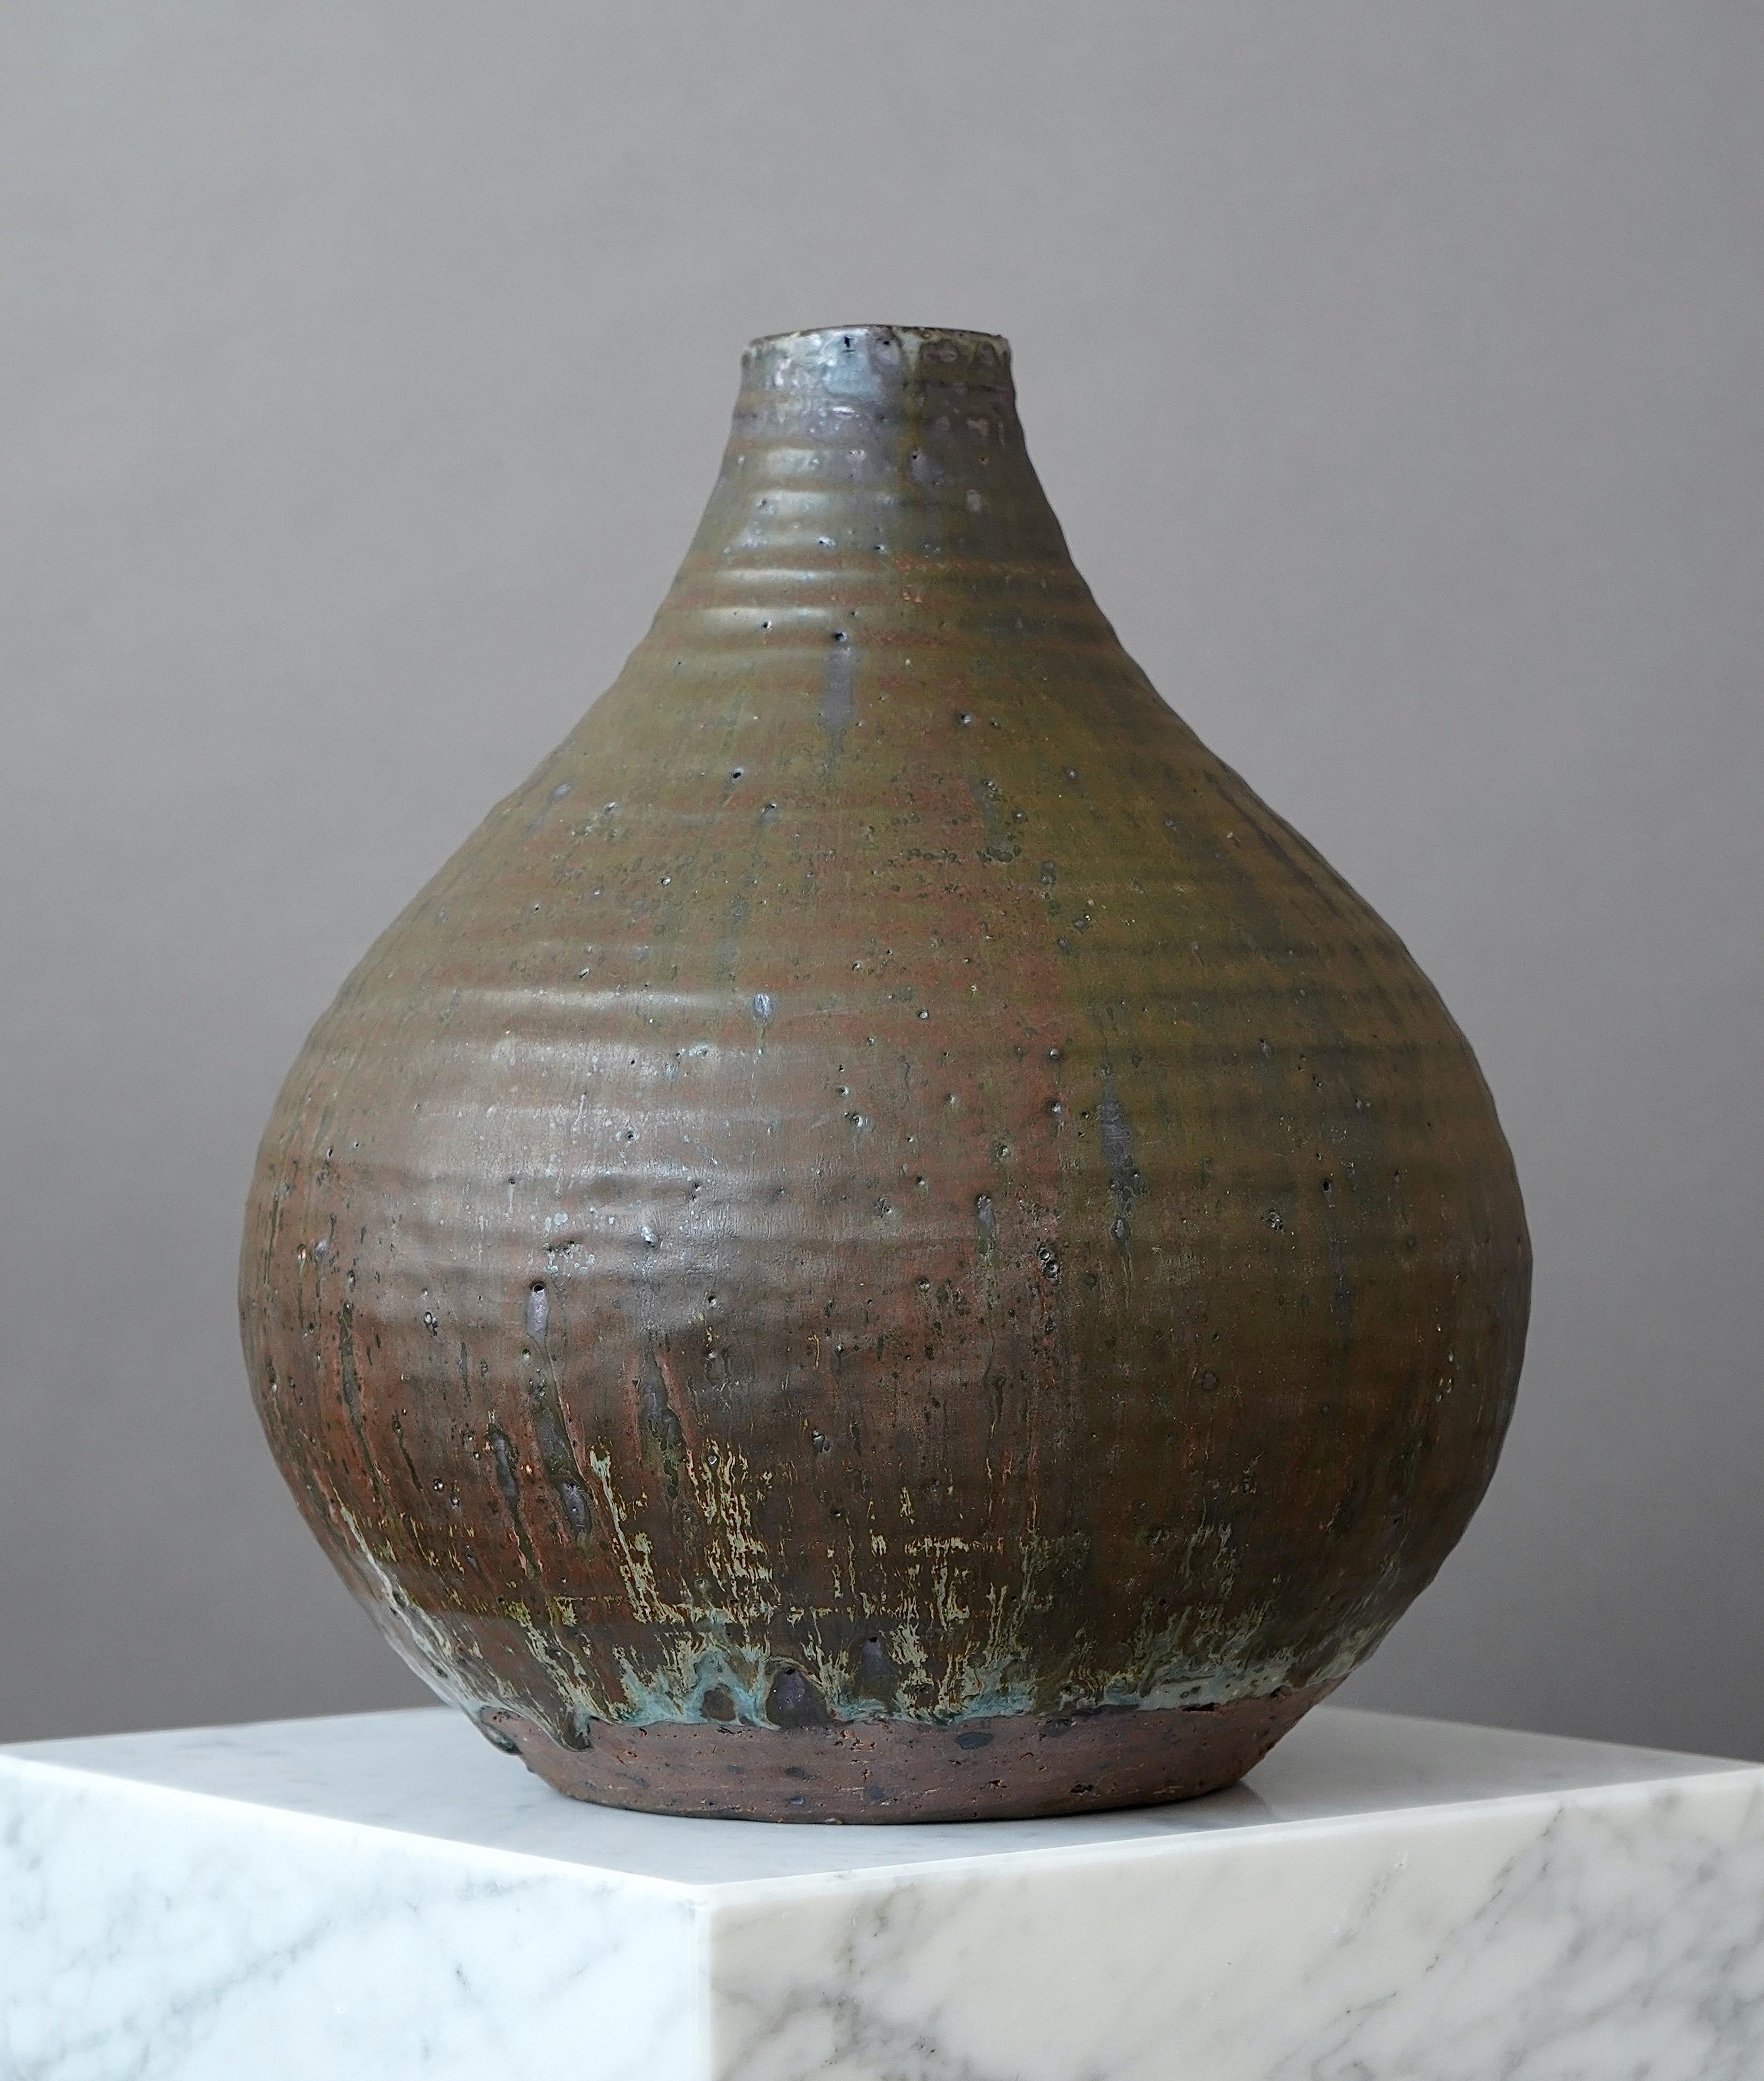 Eine schöne und einzigartige Vase aus Steingut mit erstaunlicher Glasur. 
Hergestellt von Rolf Palm, im Studio des Künstlers, Mölle, Schweden, 1964.

Er ist groß und wiegt 7,7 kg.

Ausgezeichneter Zustand. Eingeschnitten 'Palm / Mölle / 1964'.

Rolf